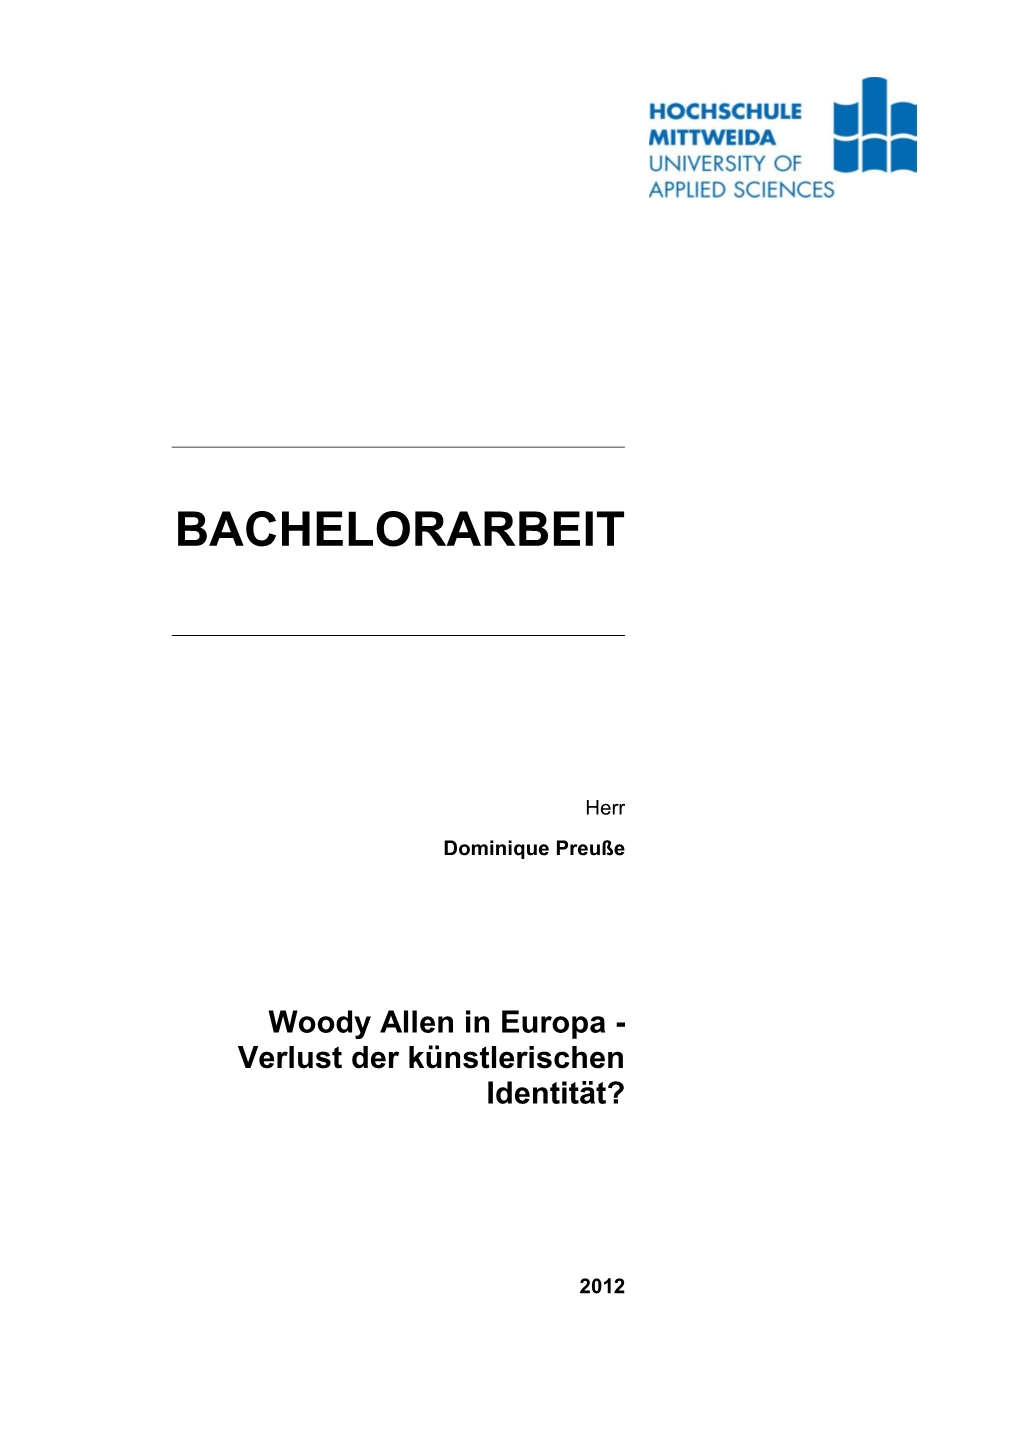 Woody Allen in Europa - Verlust Der Künstlerischen Identität?